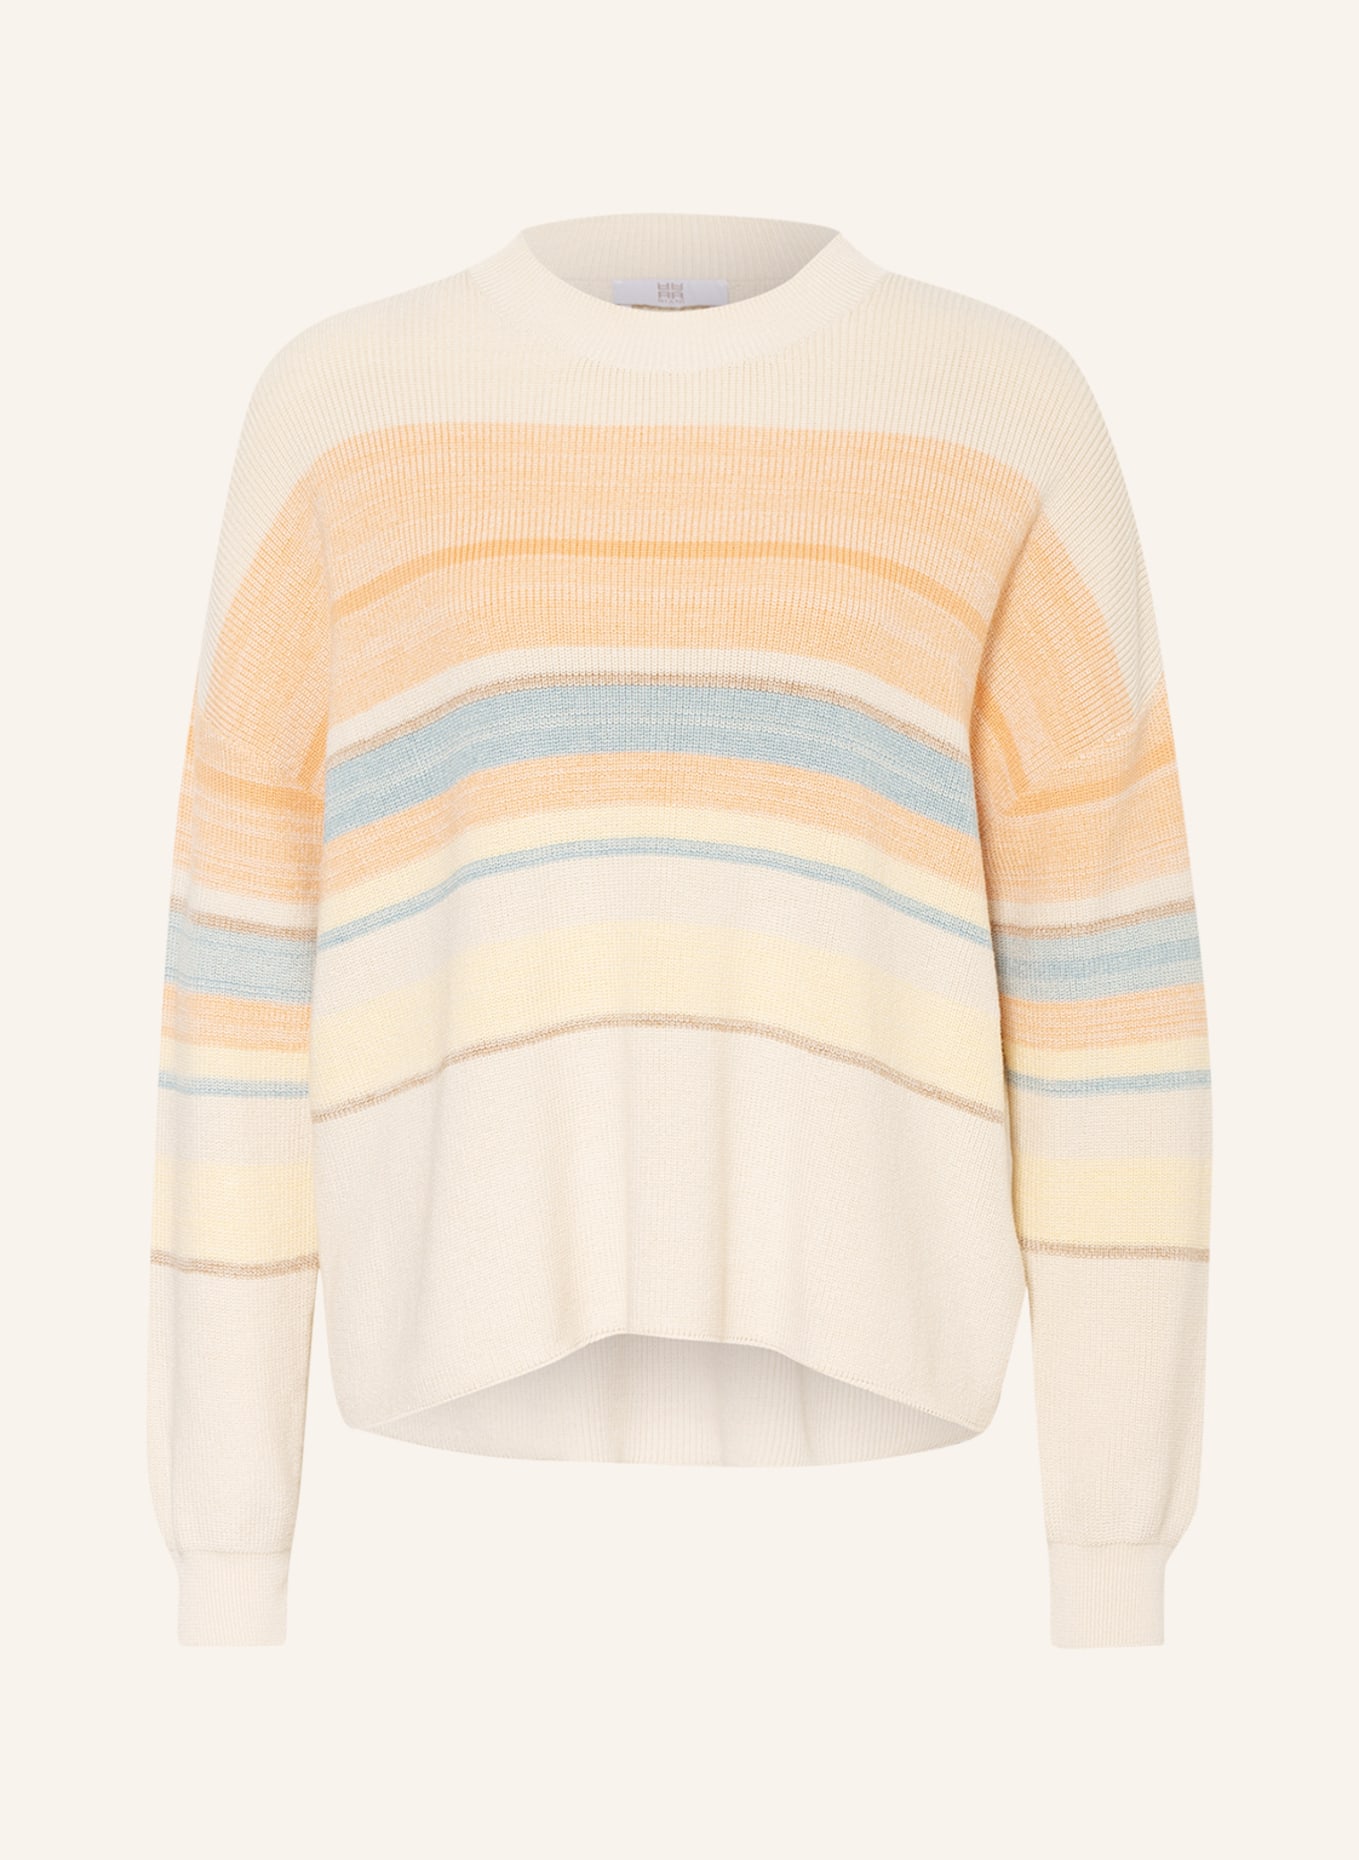 RIANI Sweater, Color: ECRU/ LIGHT ORANGE/ LIGHT BLUE (Image 1)